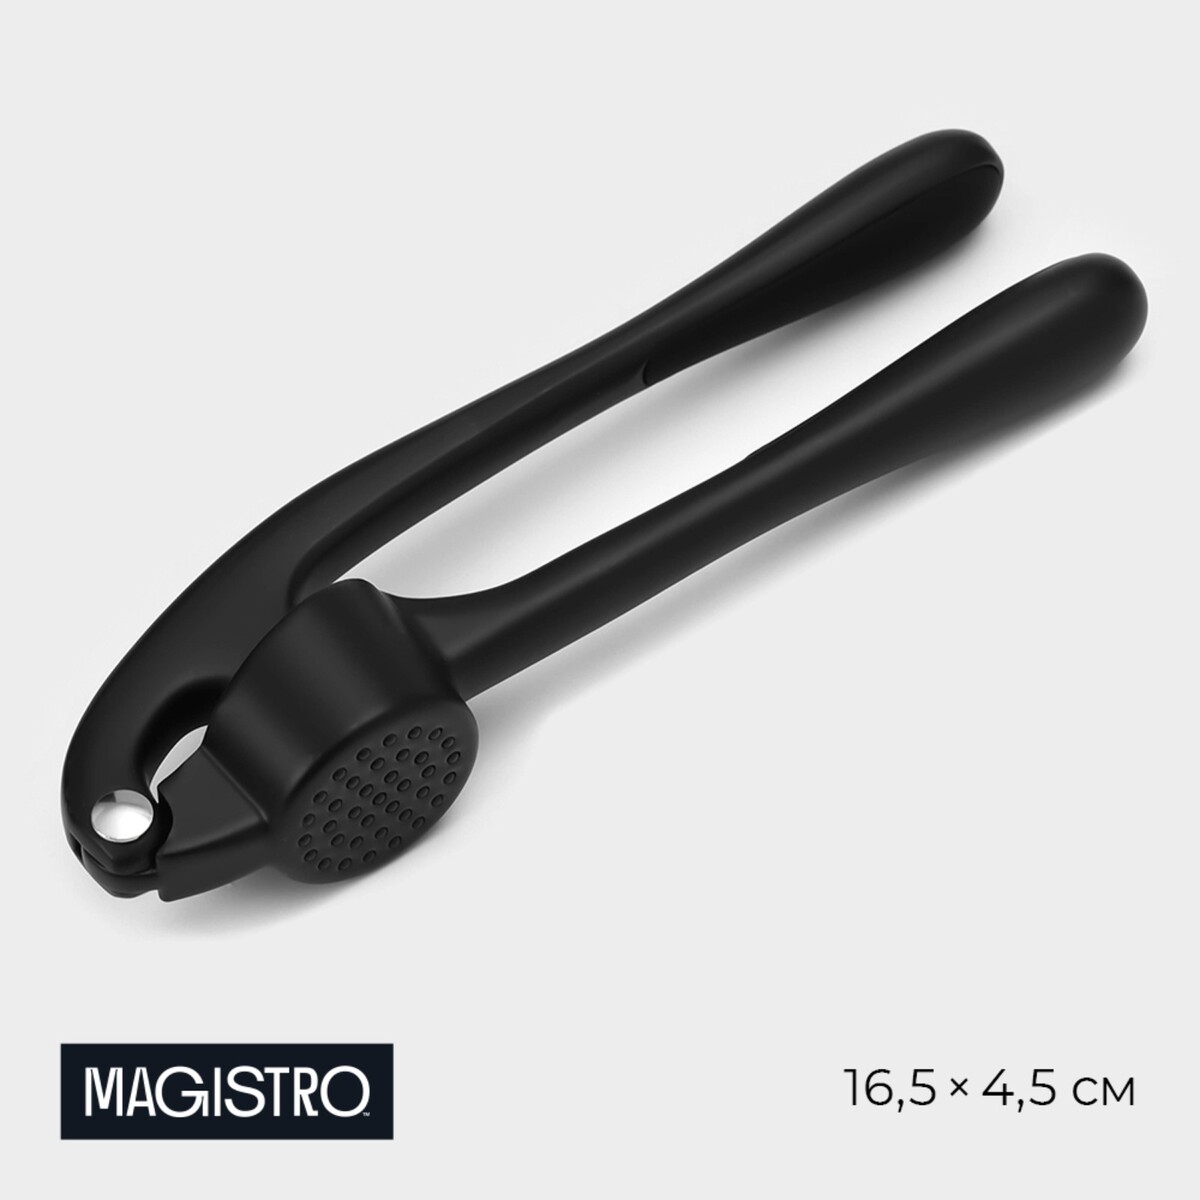 Пресс для чеснока magistro vantablack, 16,5×4,5 см, цвет черный пресс для чеснока magistro